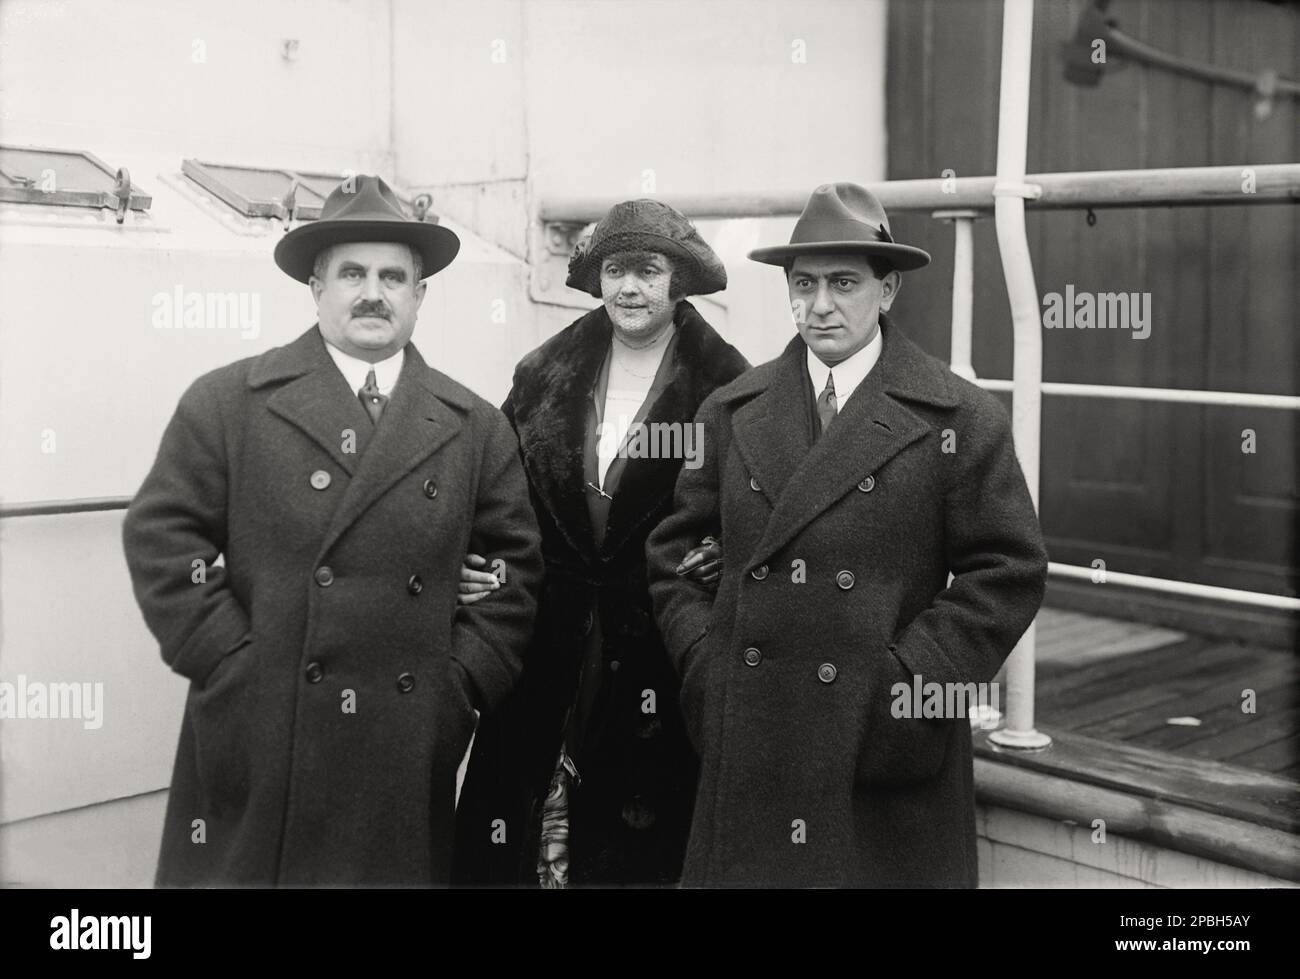 1921 , 27 dicembre , New York , USA : il regista ebraico tedesco ERNST LUBITSCH ( 1892 - 1947 ) ( proprio in questa foto)con la futura moglie Helene Kraus, arriva negli USA con il celebre produttore tedesco PAUL DAVIDSON ( 1867 - 1927 ). Davidson fu il produttore di film muto come MADAME Dubarry ( 1919 ) di Lubitsch . La coppia di Lubitsch si sposò dal 1922 al 1930 . Lubitsch lasciò la Germania per Hollywood nel 1922, su invito di Mary Pickford . La sua cittadinanza tedesca fu annientata dal regime nazista nel 1935 . Ha dato l'industria cinematografica 'The Lubitsch Touch' grazie alla sua sofisticata bravezza e sty Foto Stock